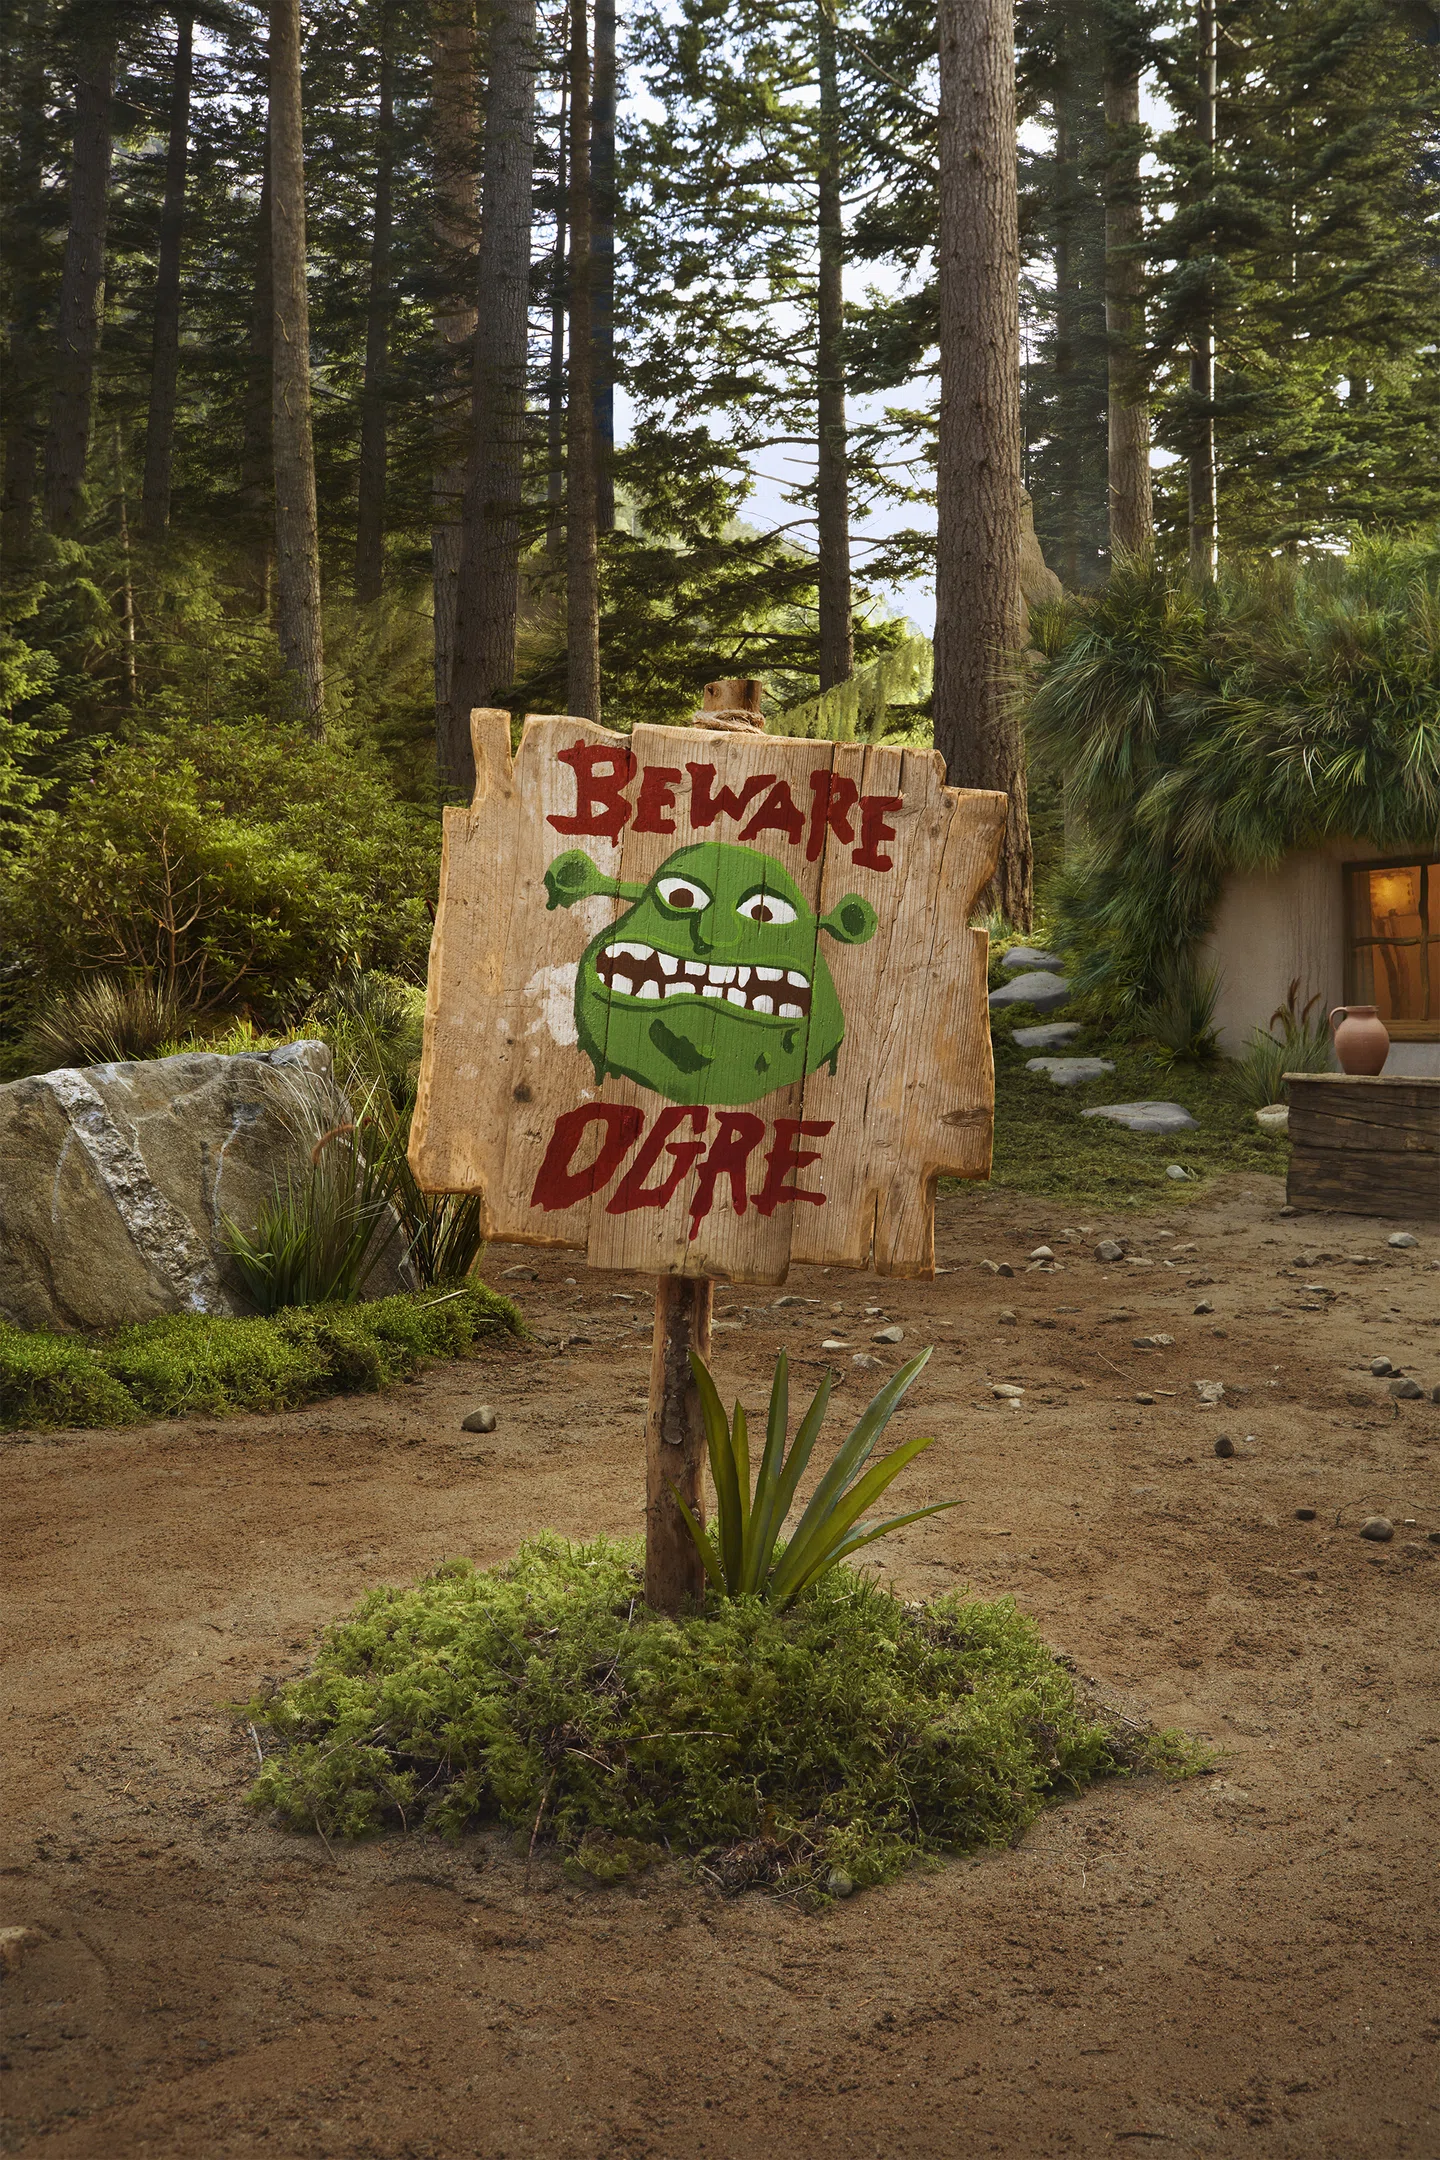 Agora você pode reservar uma estadia no pântano de Shrek gratuitamente no Airbnb